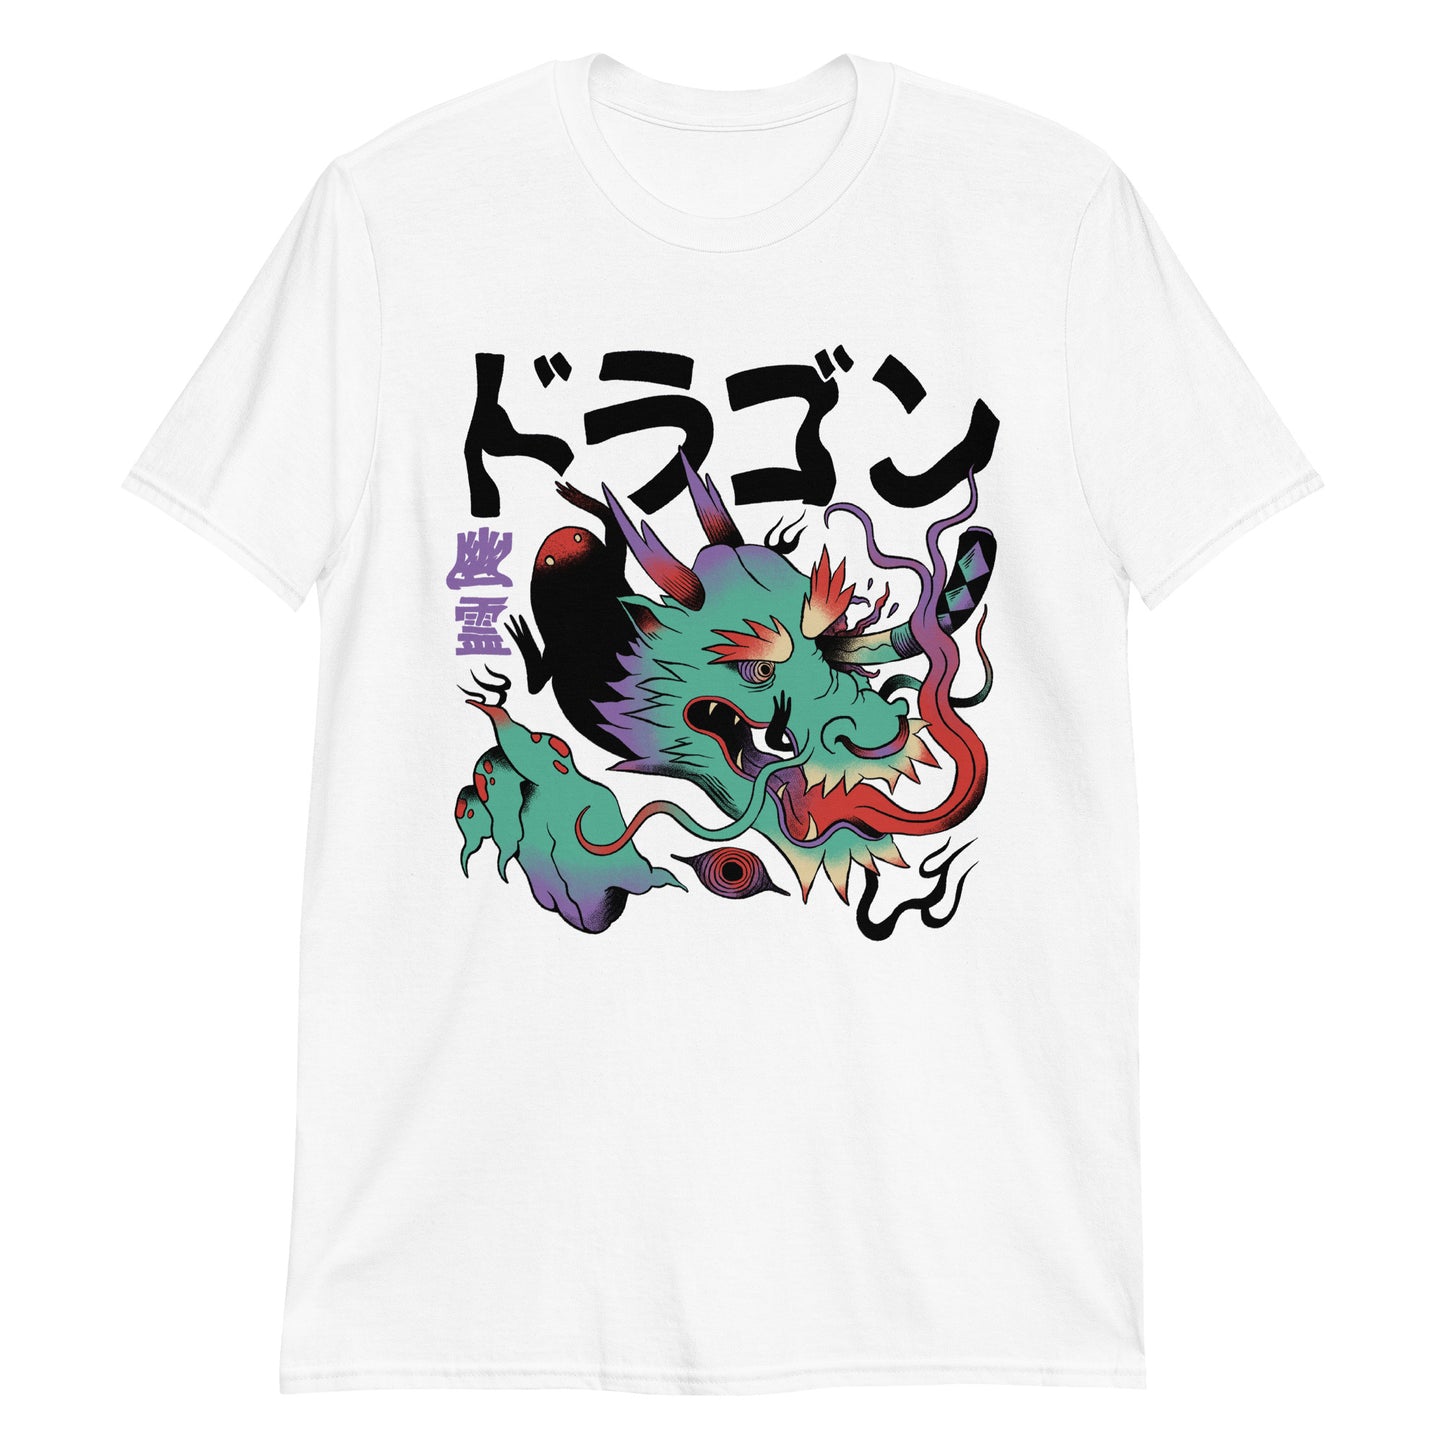 Indie Japanese Art, Japan Streeetwear Retro, Japanese Aesthetic T-Shirt